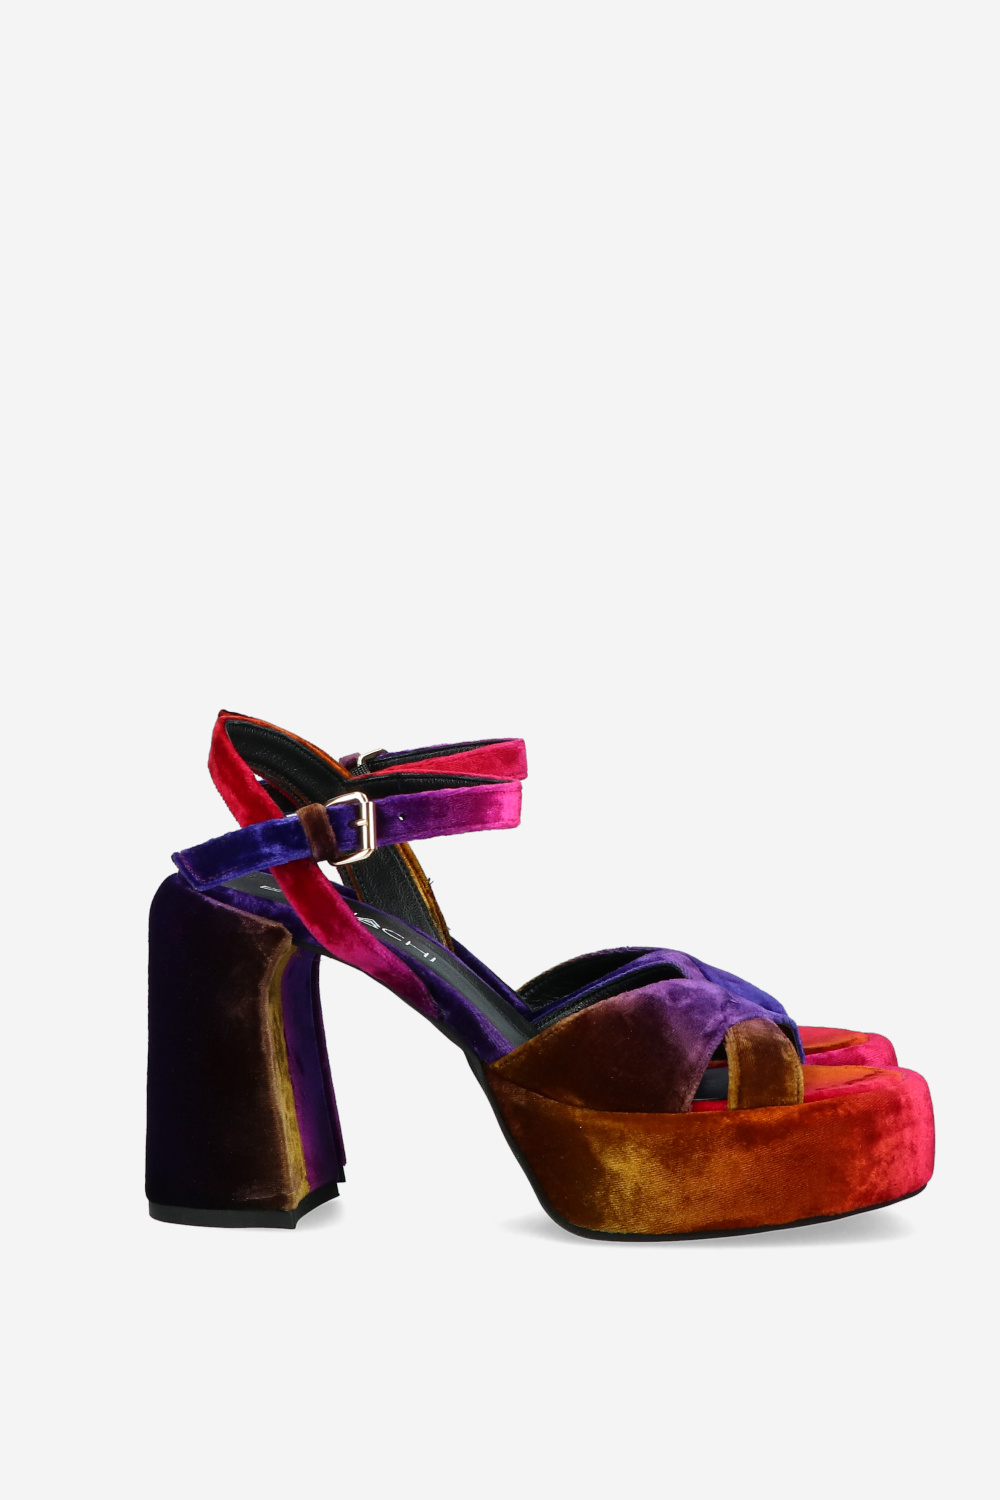 Elena Iachi Sandals Bright colors